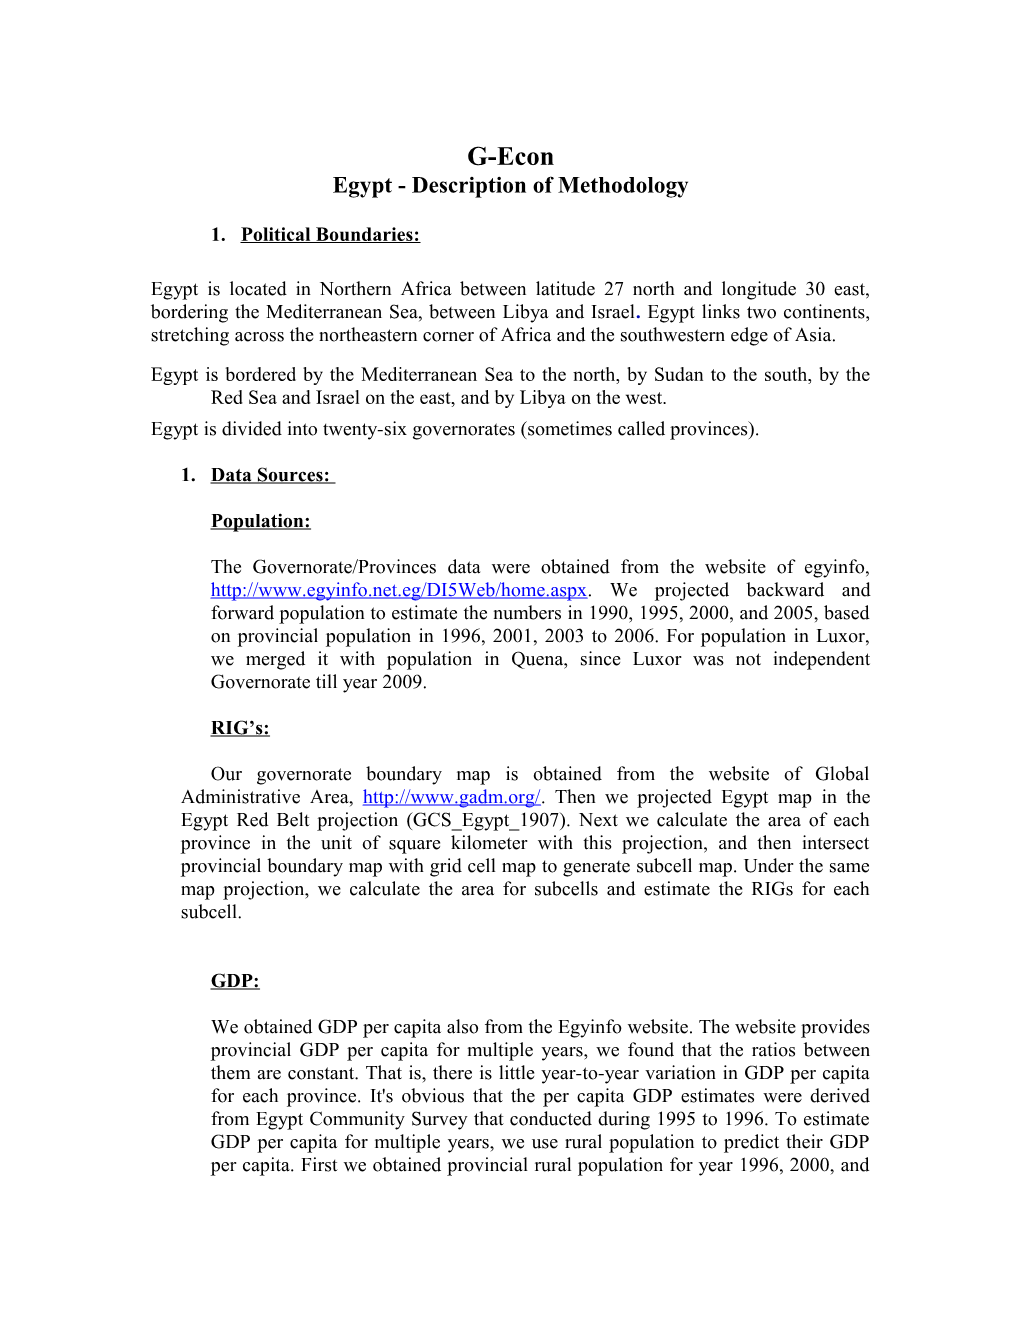 Egypt- Description of Methodology